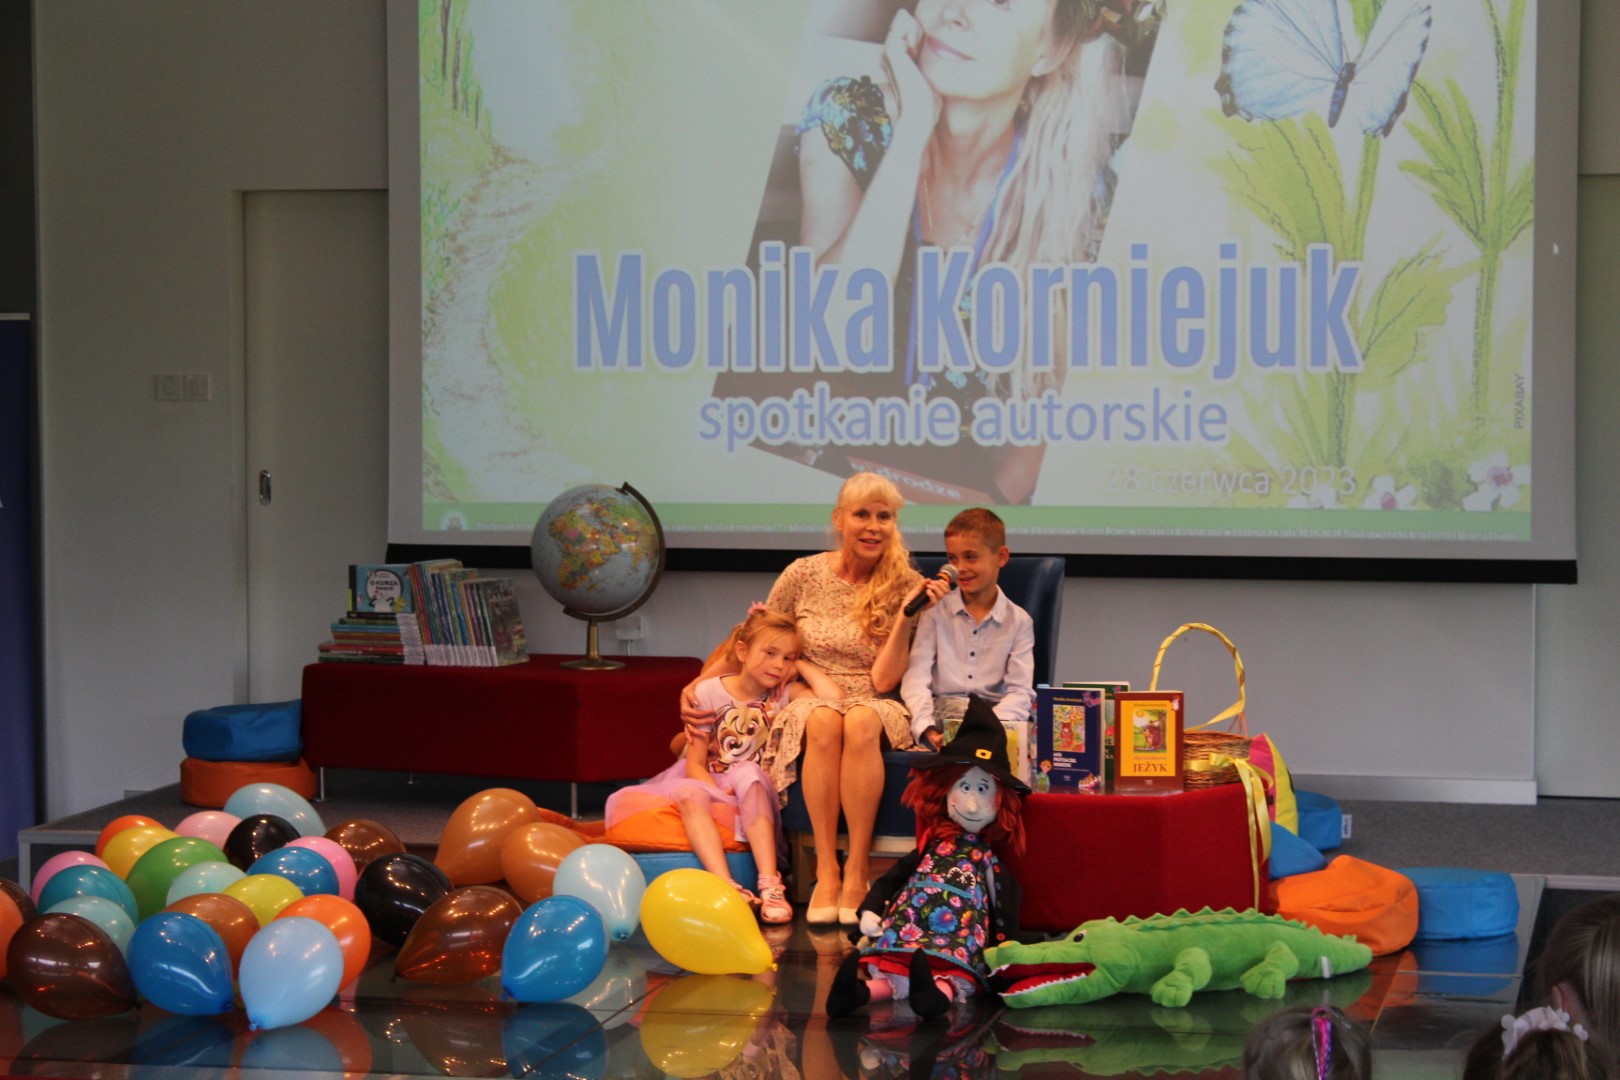 Spotkanie autorskie z Moniką Korniejuk w sali widowiskowej biblioteki